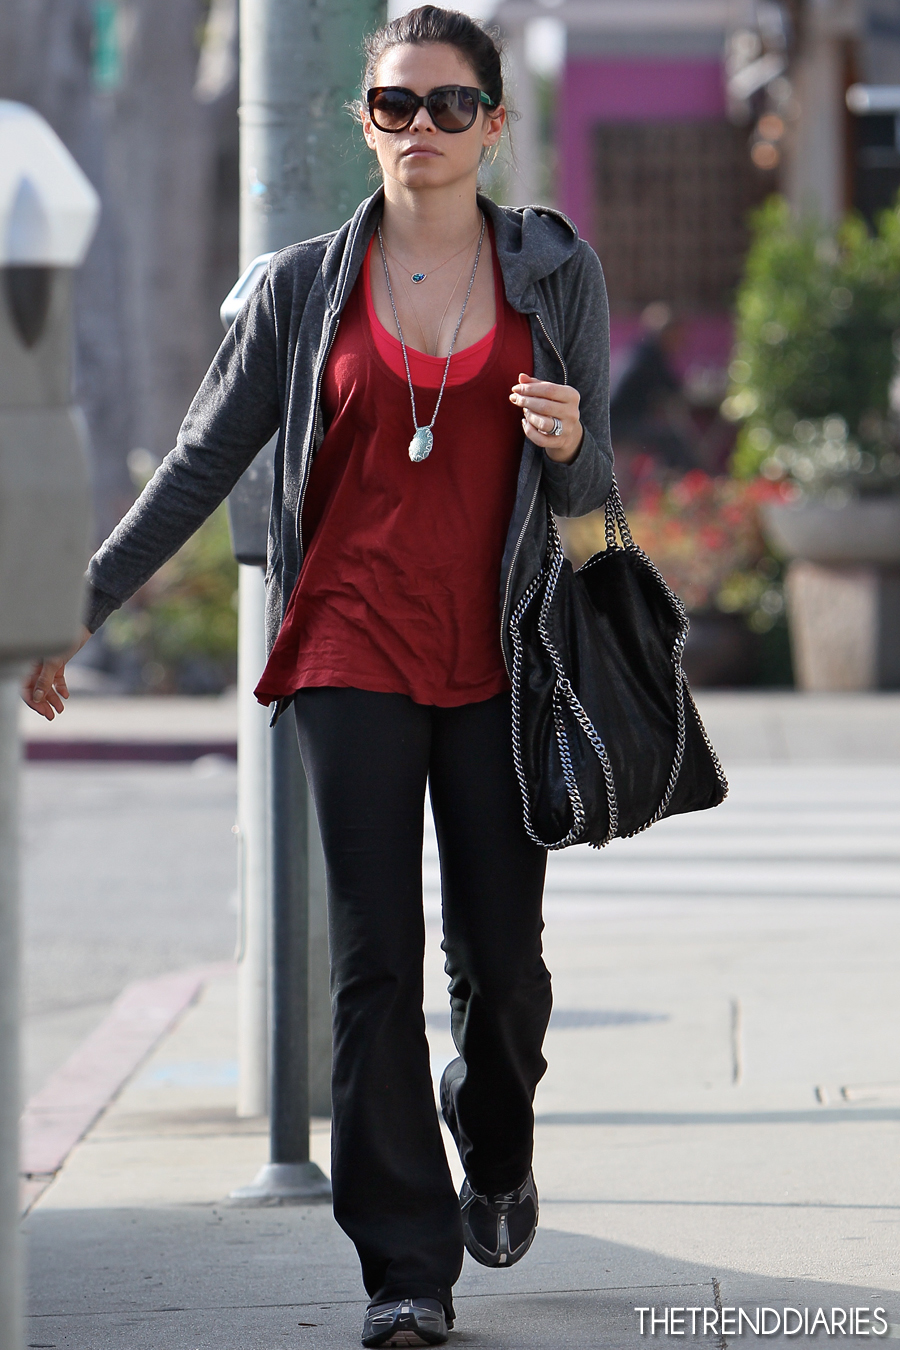 Jenna Dewan Tatum